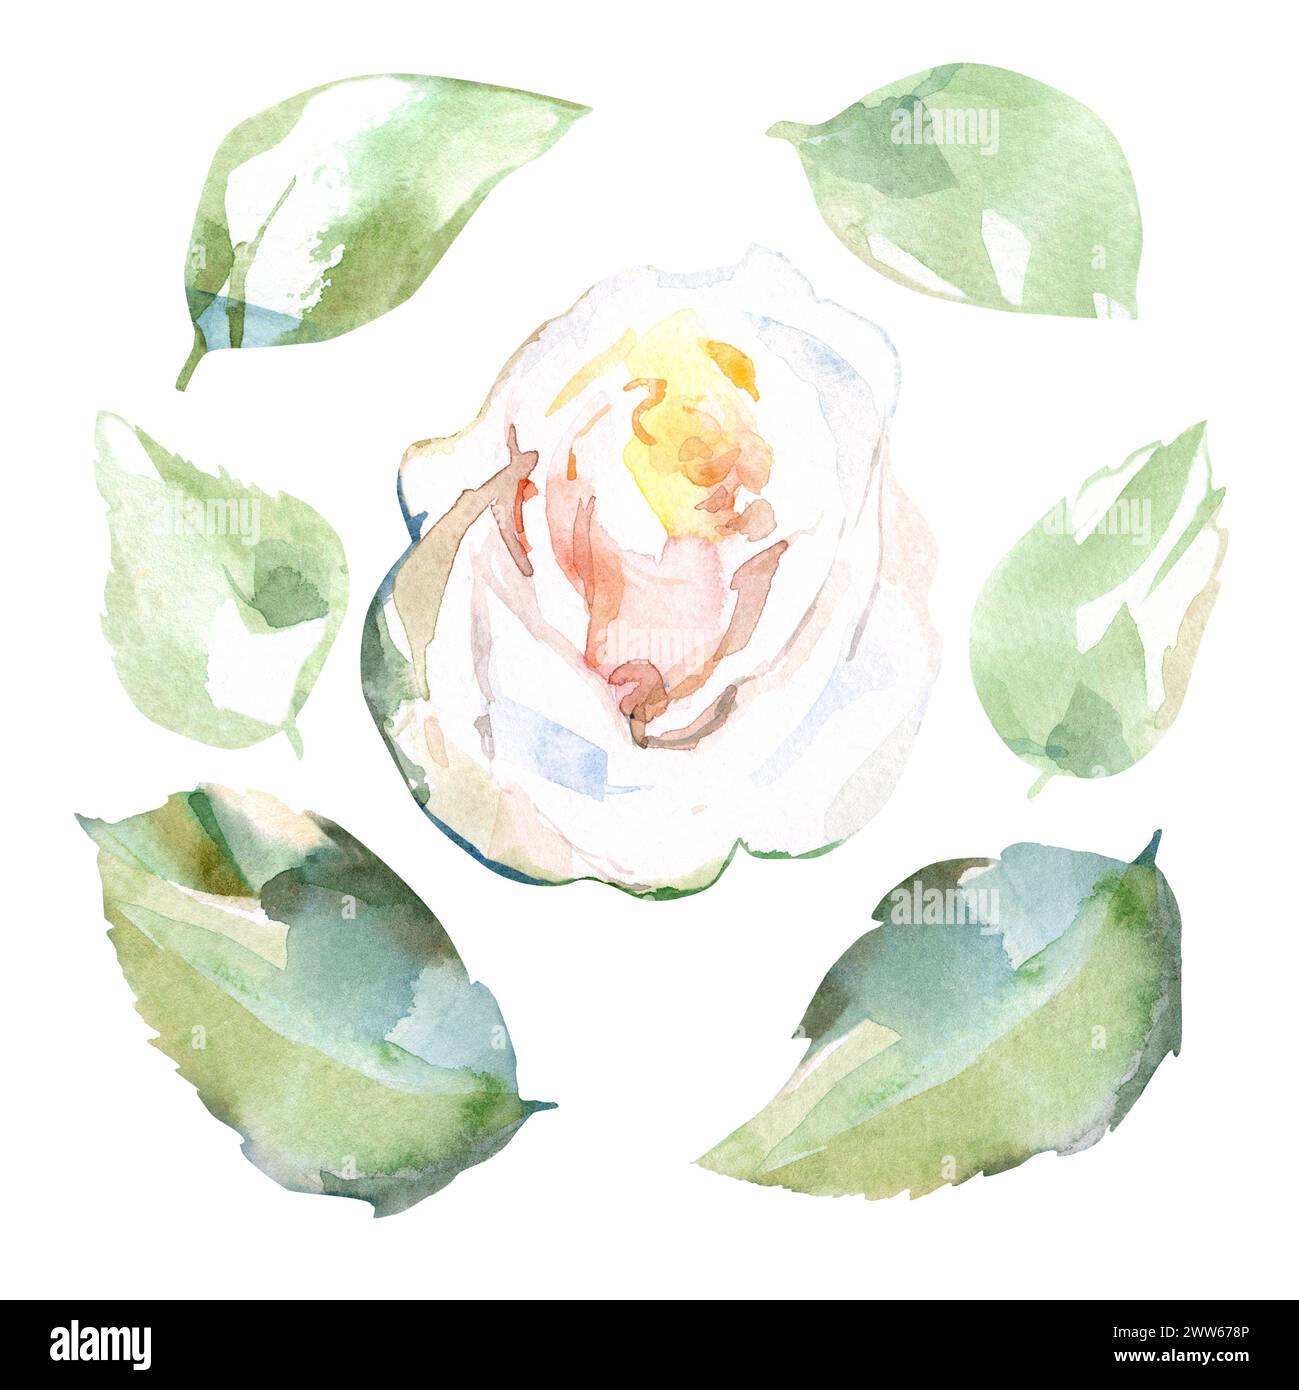 Ensemble d'illustration florale aquarelle de rose blanche avec des feuilles vertes dans les fleurs de jardin de collection. Isolé sur fond blanc. Motif floral de mariage Banque D'Images